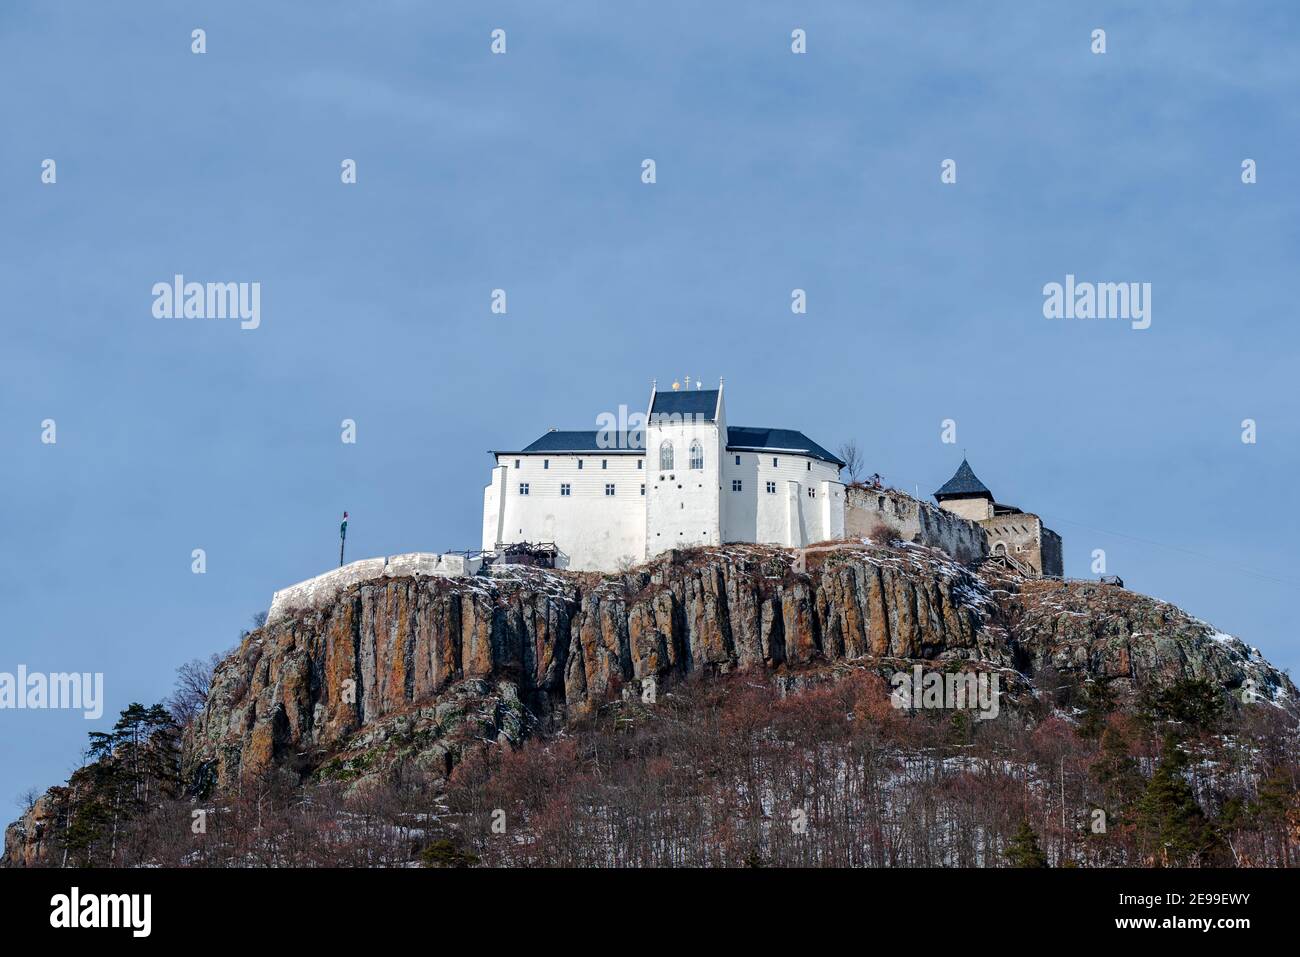 Fuzer castello in Zemplen montagne Ungheria. Incredibile rinnovata storia fottress che ha costruito in cima a una montagna vulcanica nel 13 ° secolo. Foto Stock